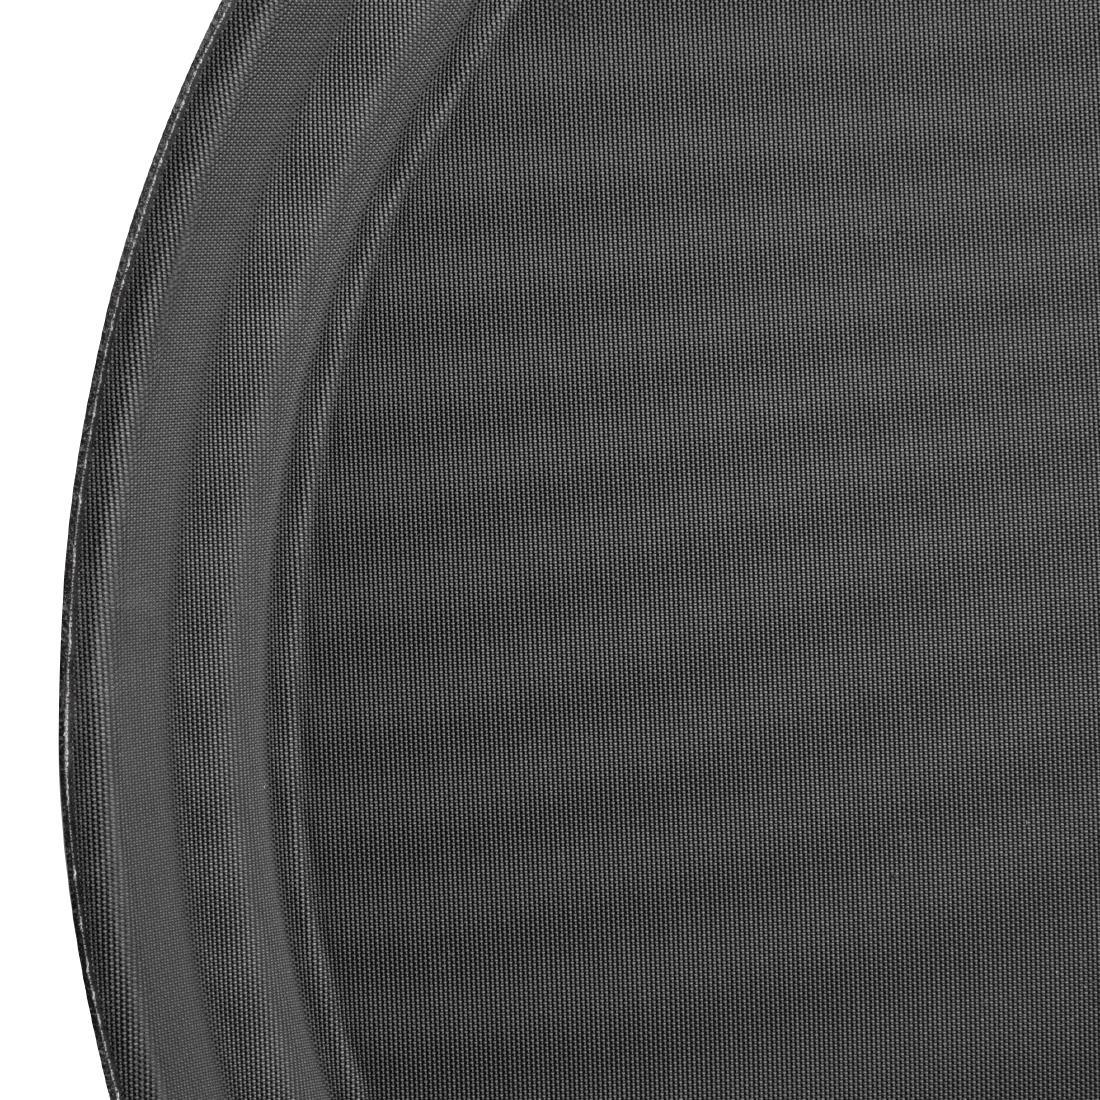 Olympia Kristallon Polypropylene Round Non-Slip Tray Black 356mm - C557  - 3